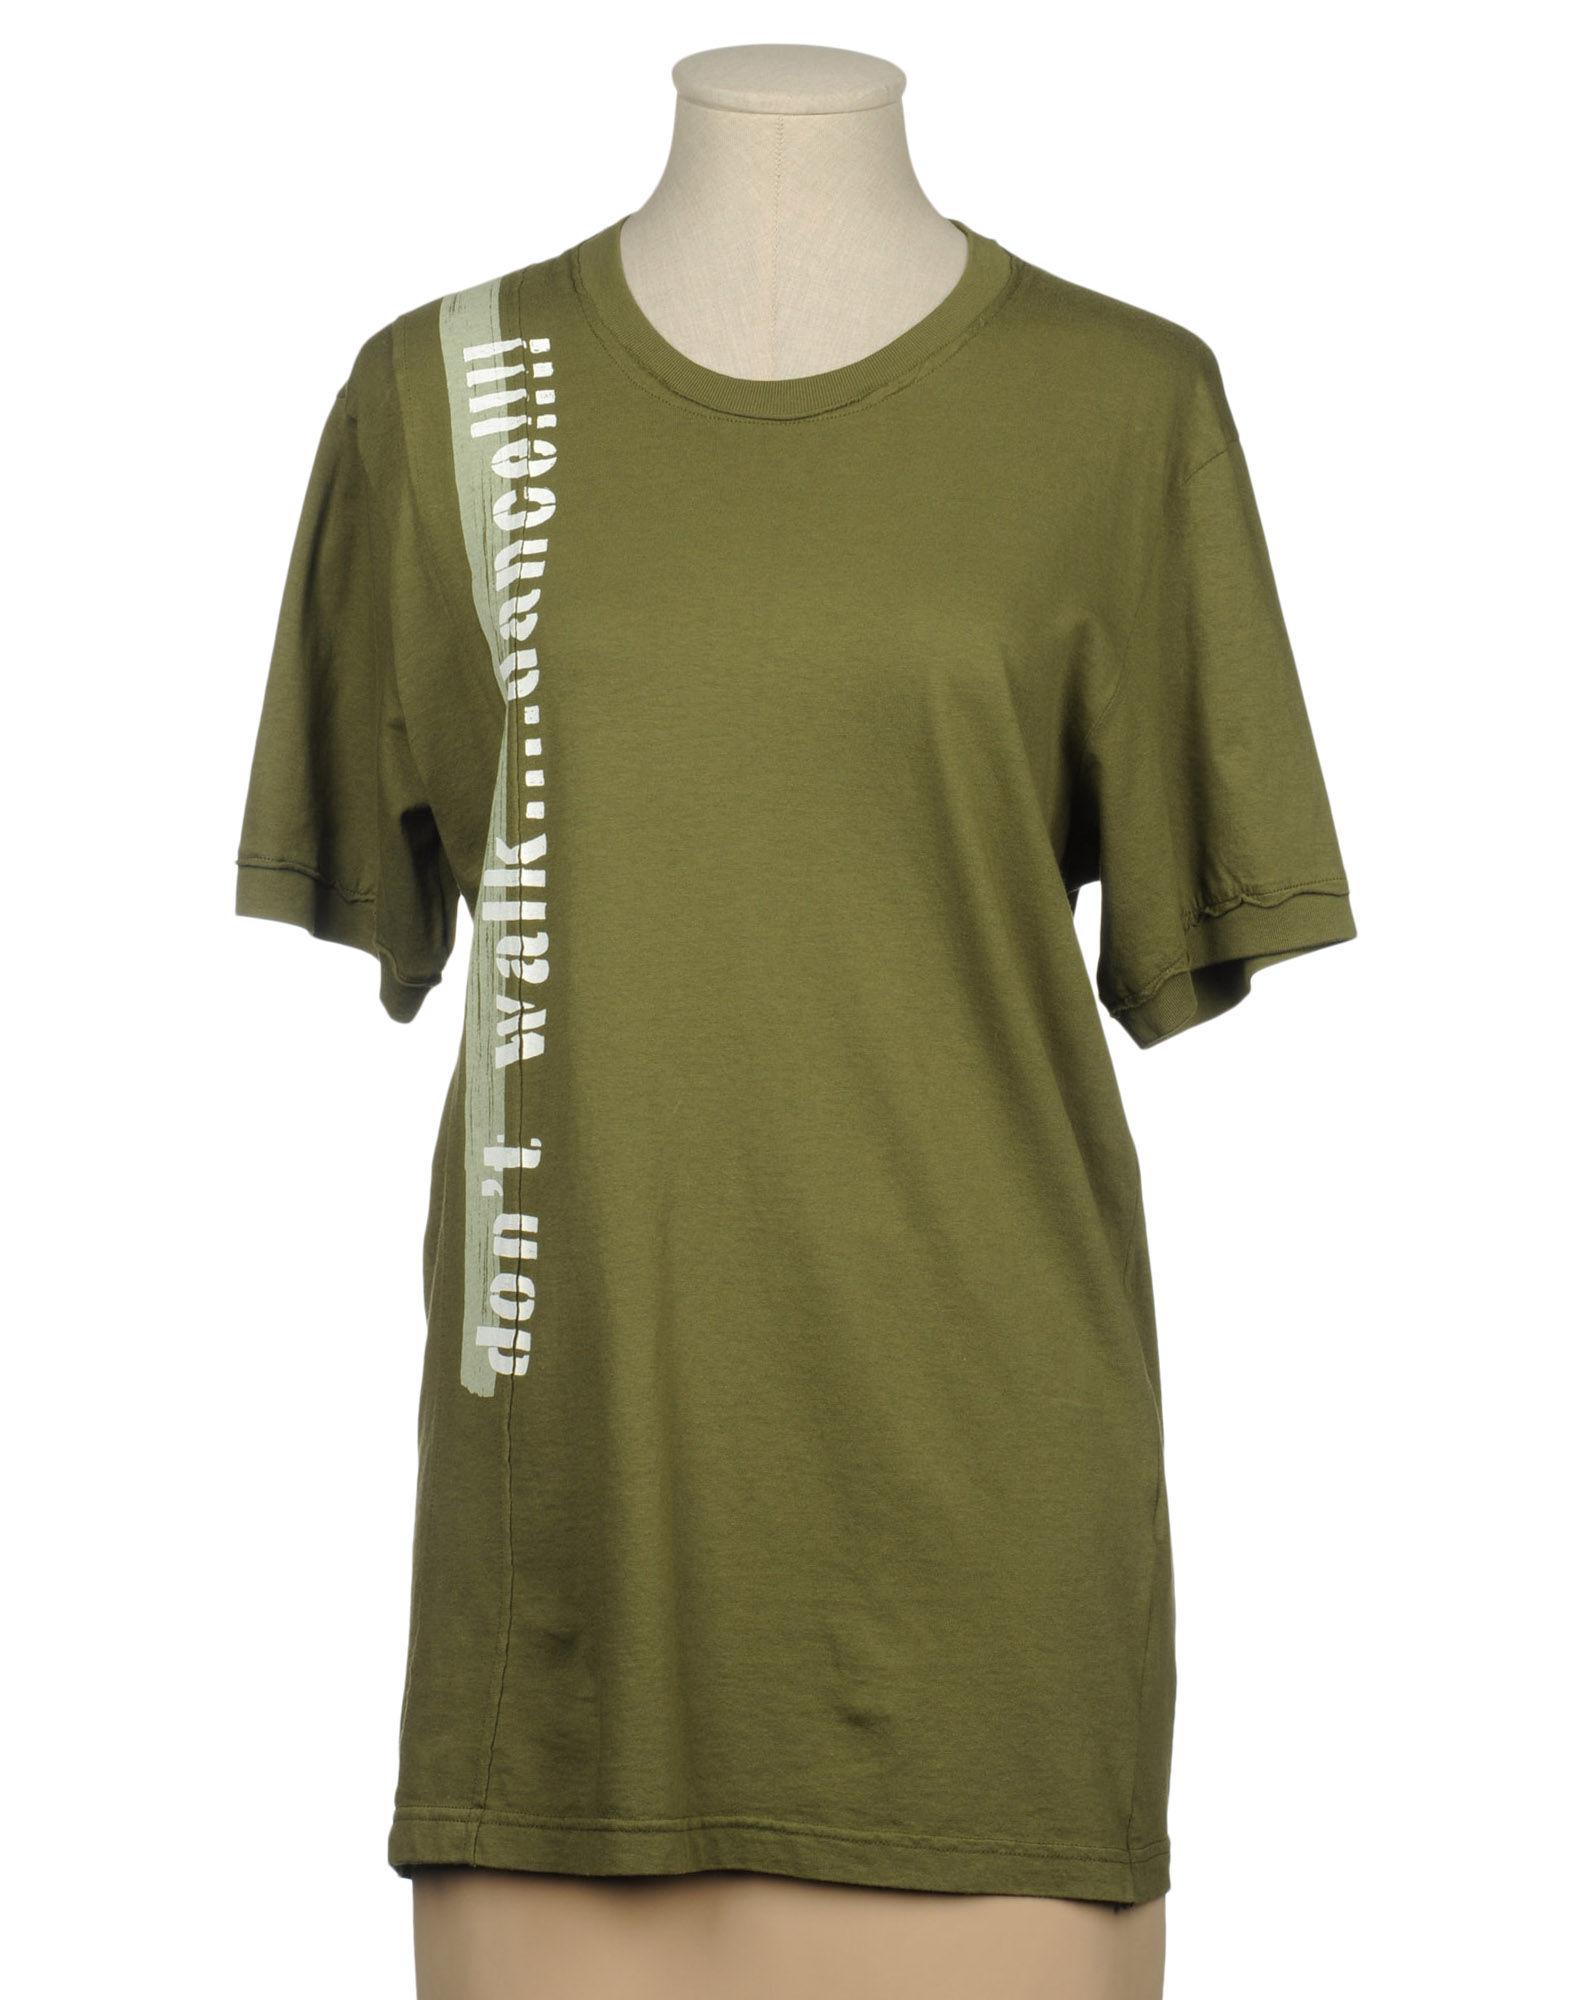 Foto Deha Camisetas De Manga Corta Mujer Verde militar foto 631097